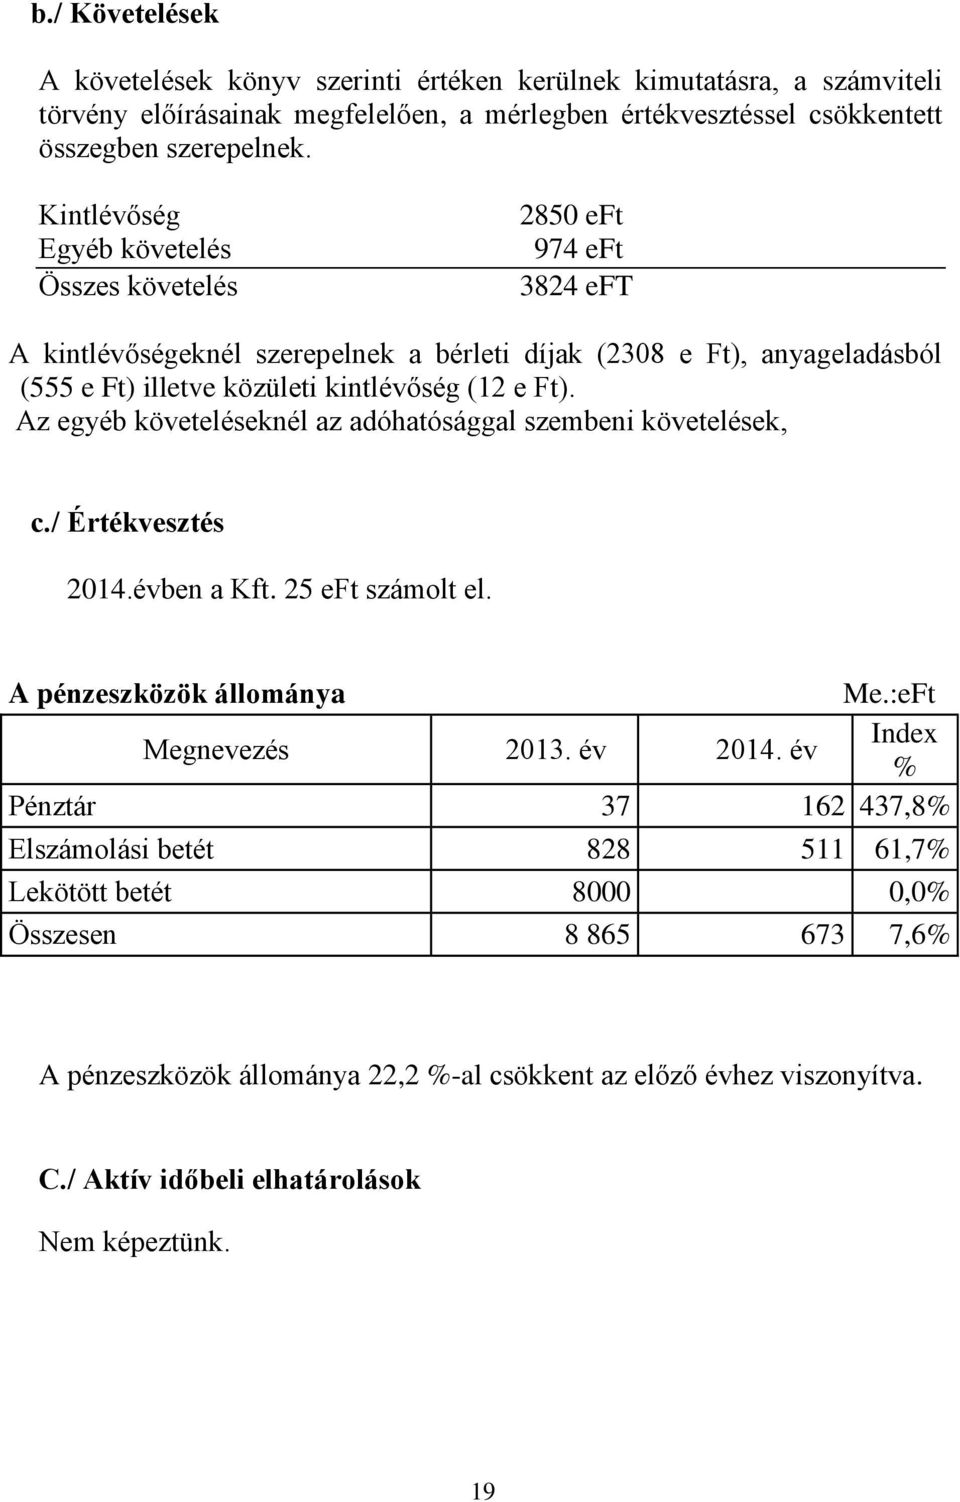 Az egyéb követeléseknél az adóhatósággal szembeni követelések, c./ Értékvesztés 2014.évben a Kft. 25 eft számolt el. A pénzeszközök állománya Me.:eFt Megnevezés 2013. év 2014.